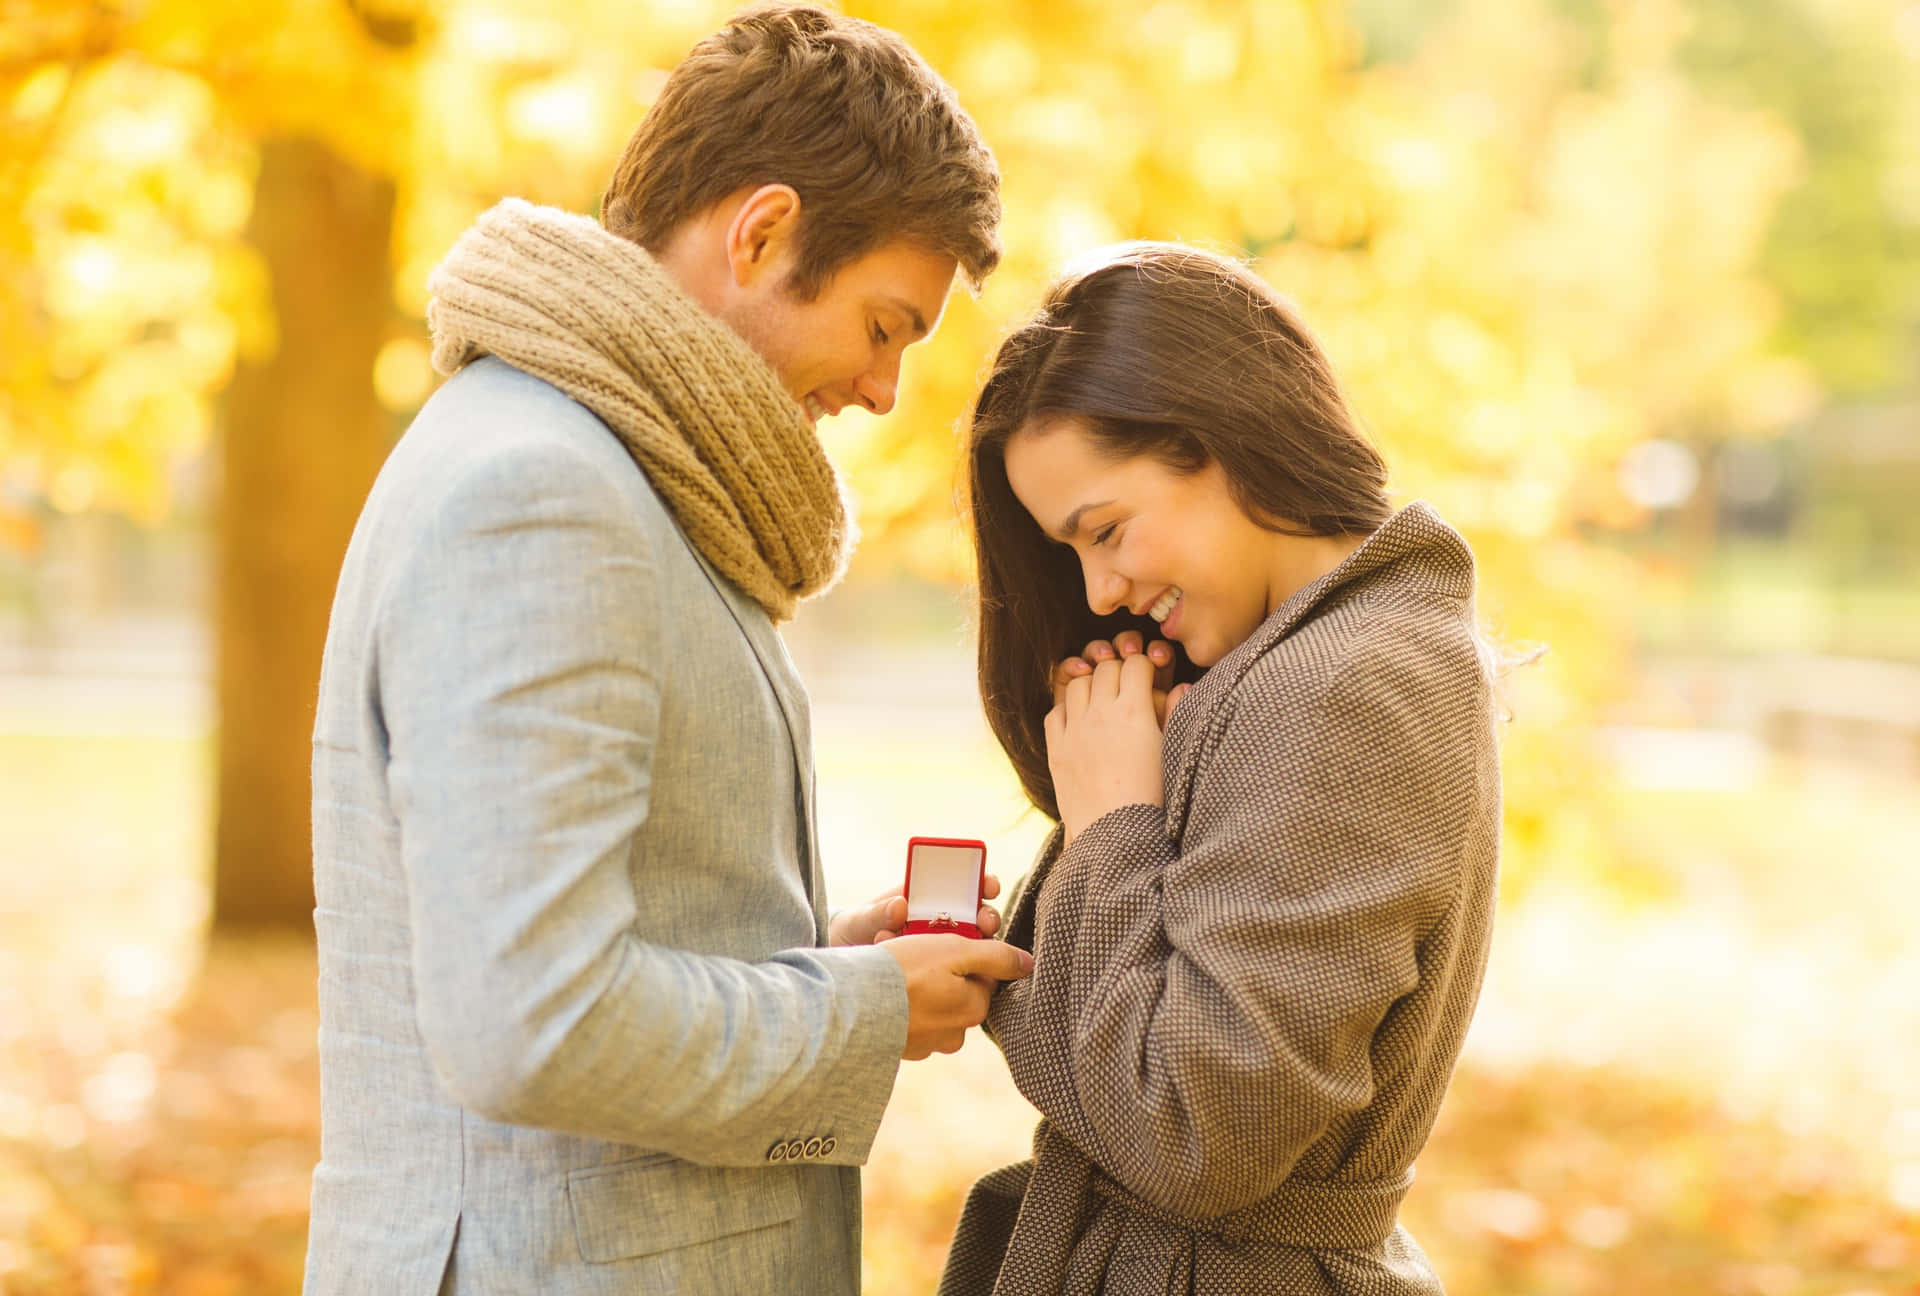 A romantic proposal in Paris